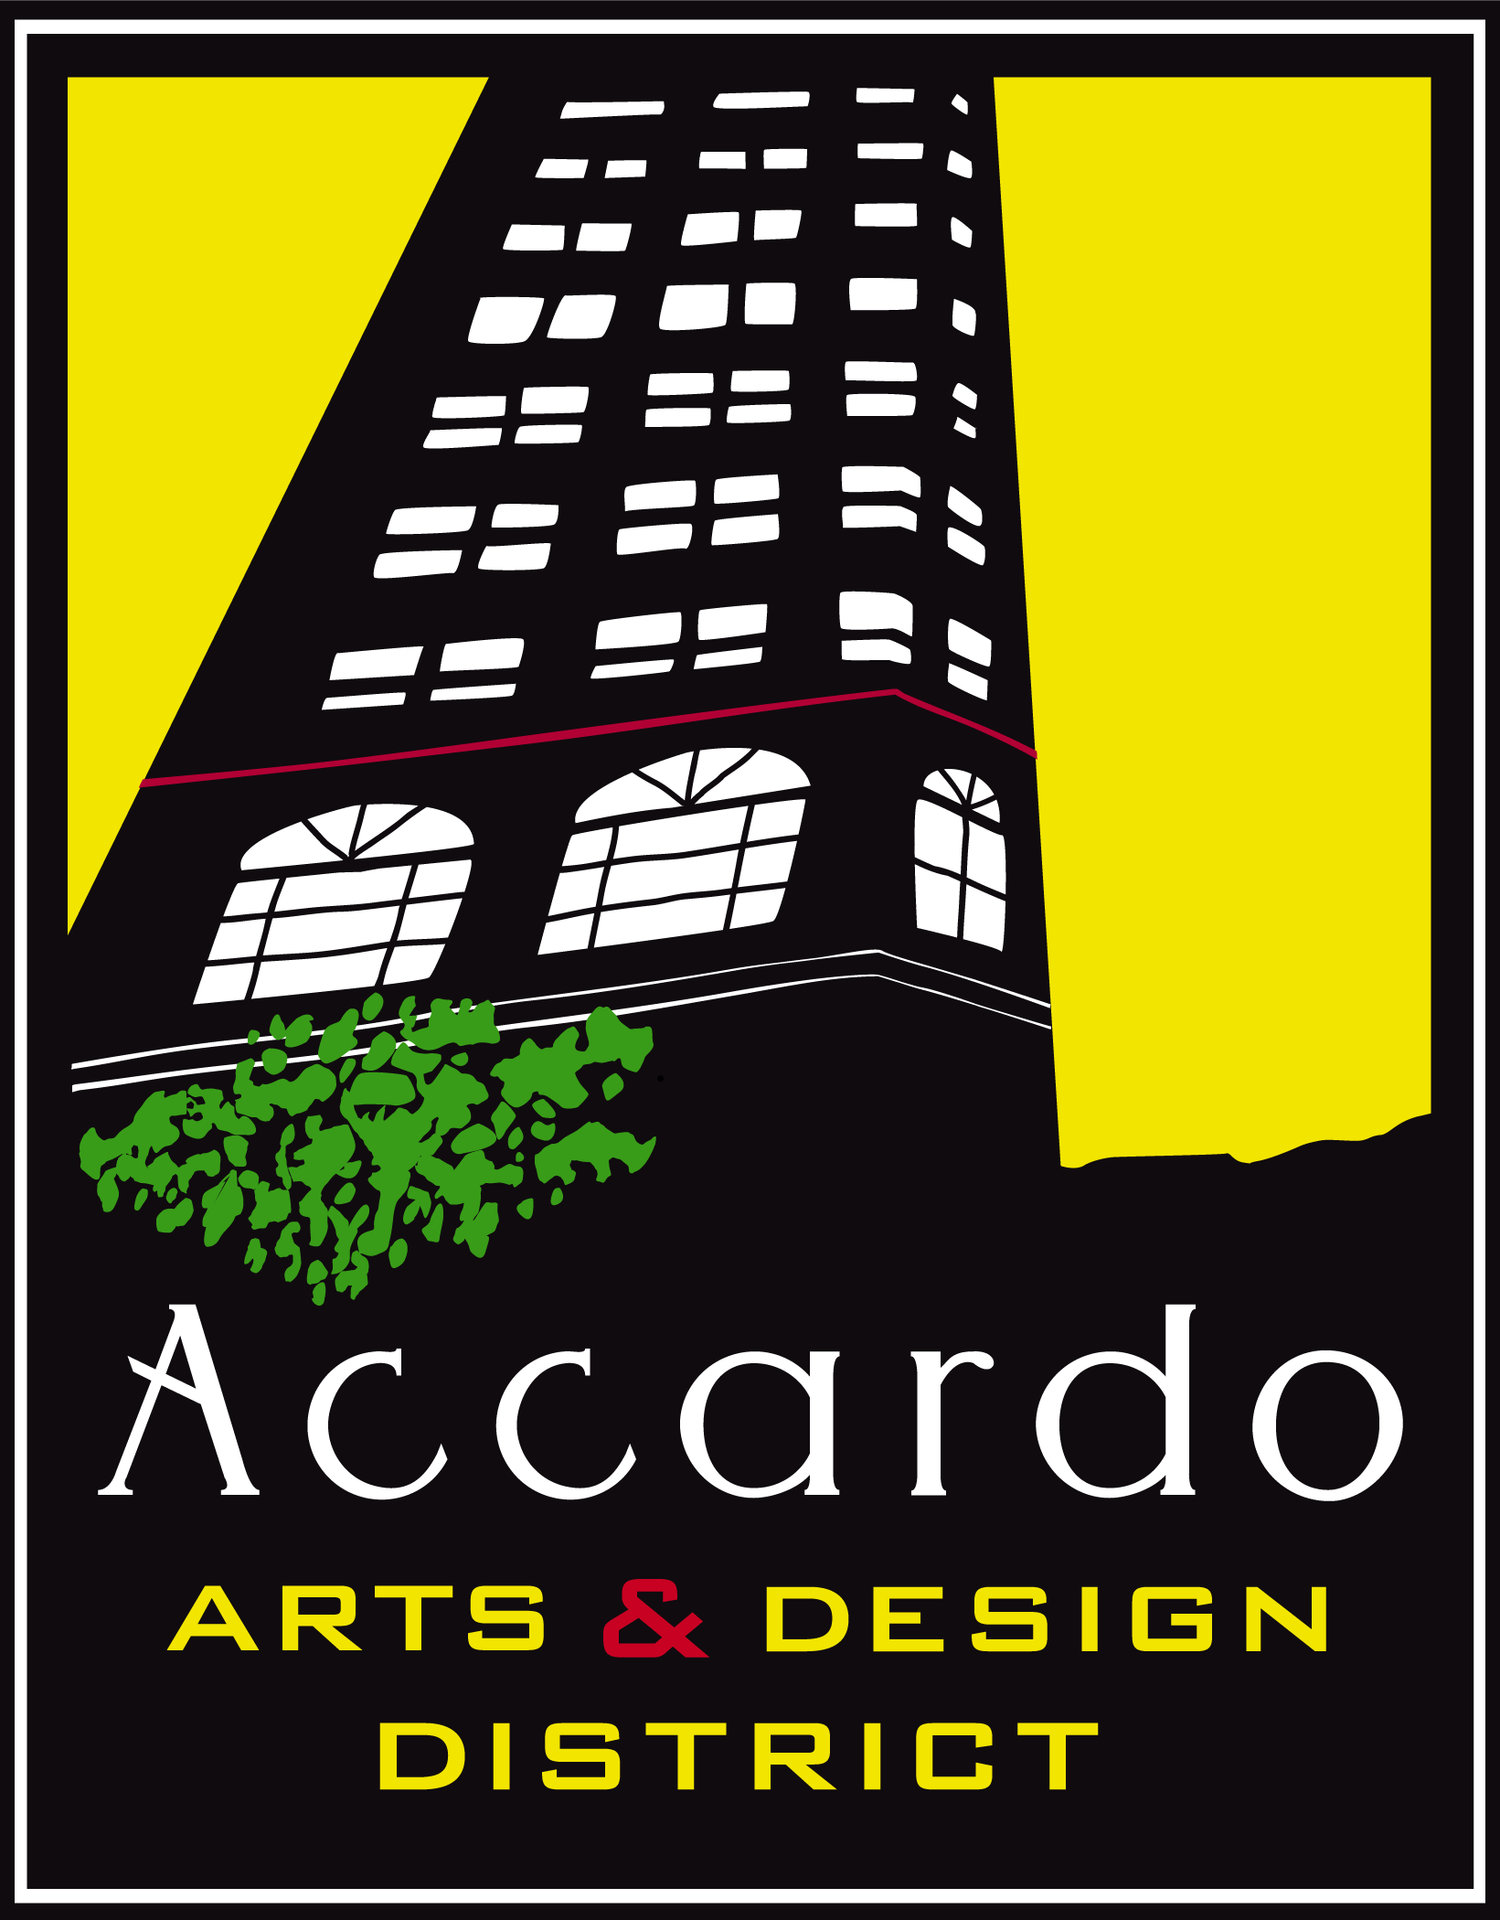 Accardo Arts